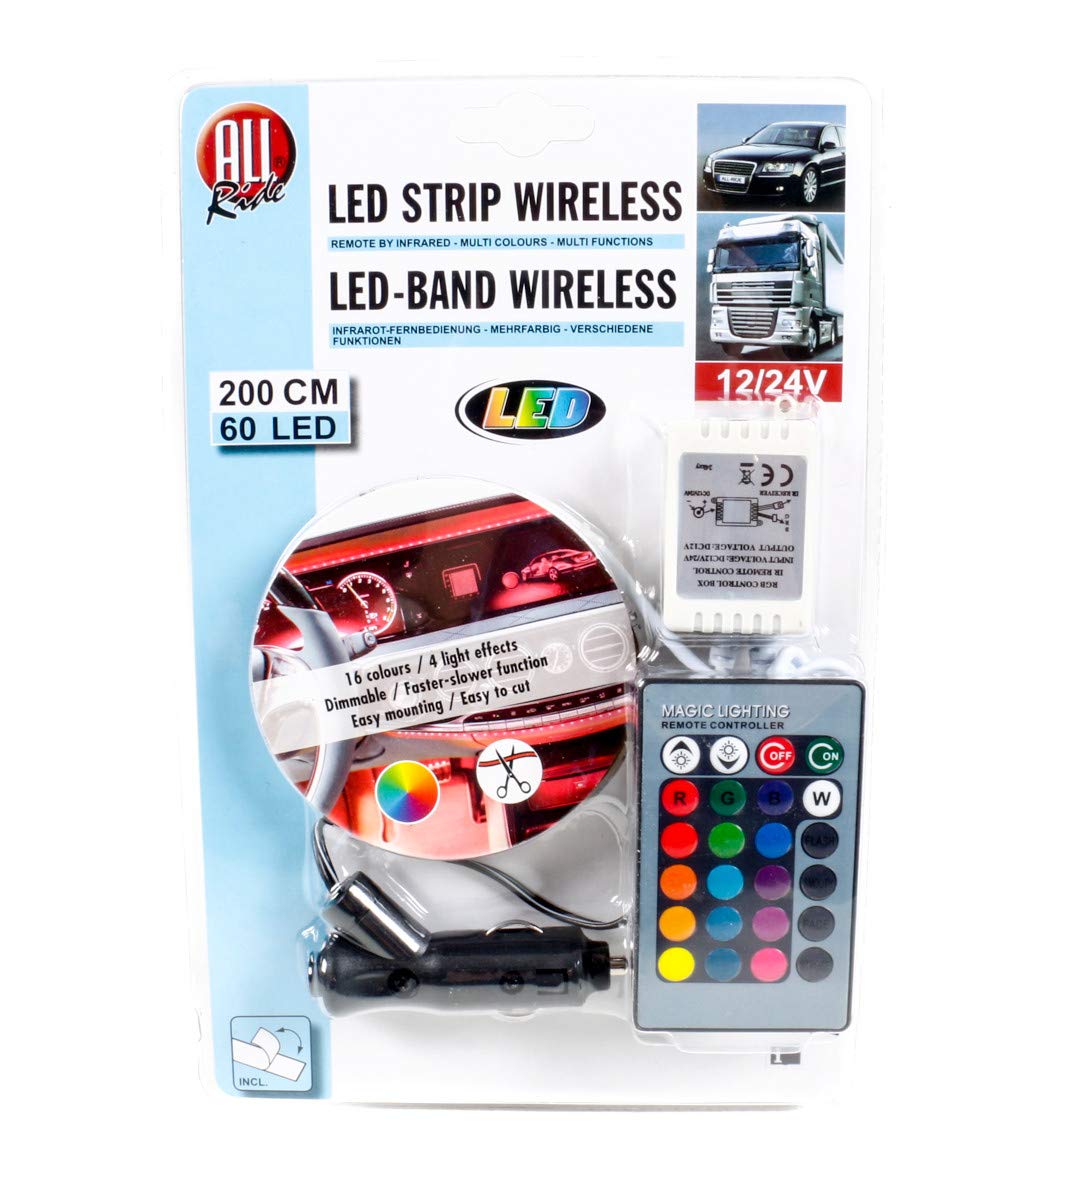 All Ride LED-Deko-Band, außen mit Infrarot-Fernbedienung, Mehrfarbig, multifunktional, 12/24V, 60 LEDs, 200cm von All Ride